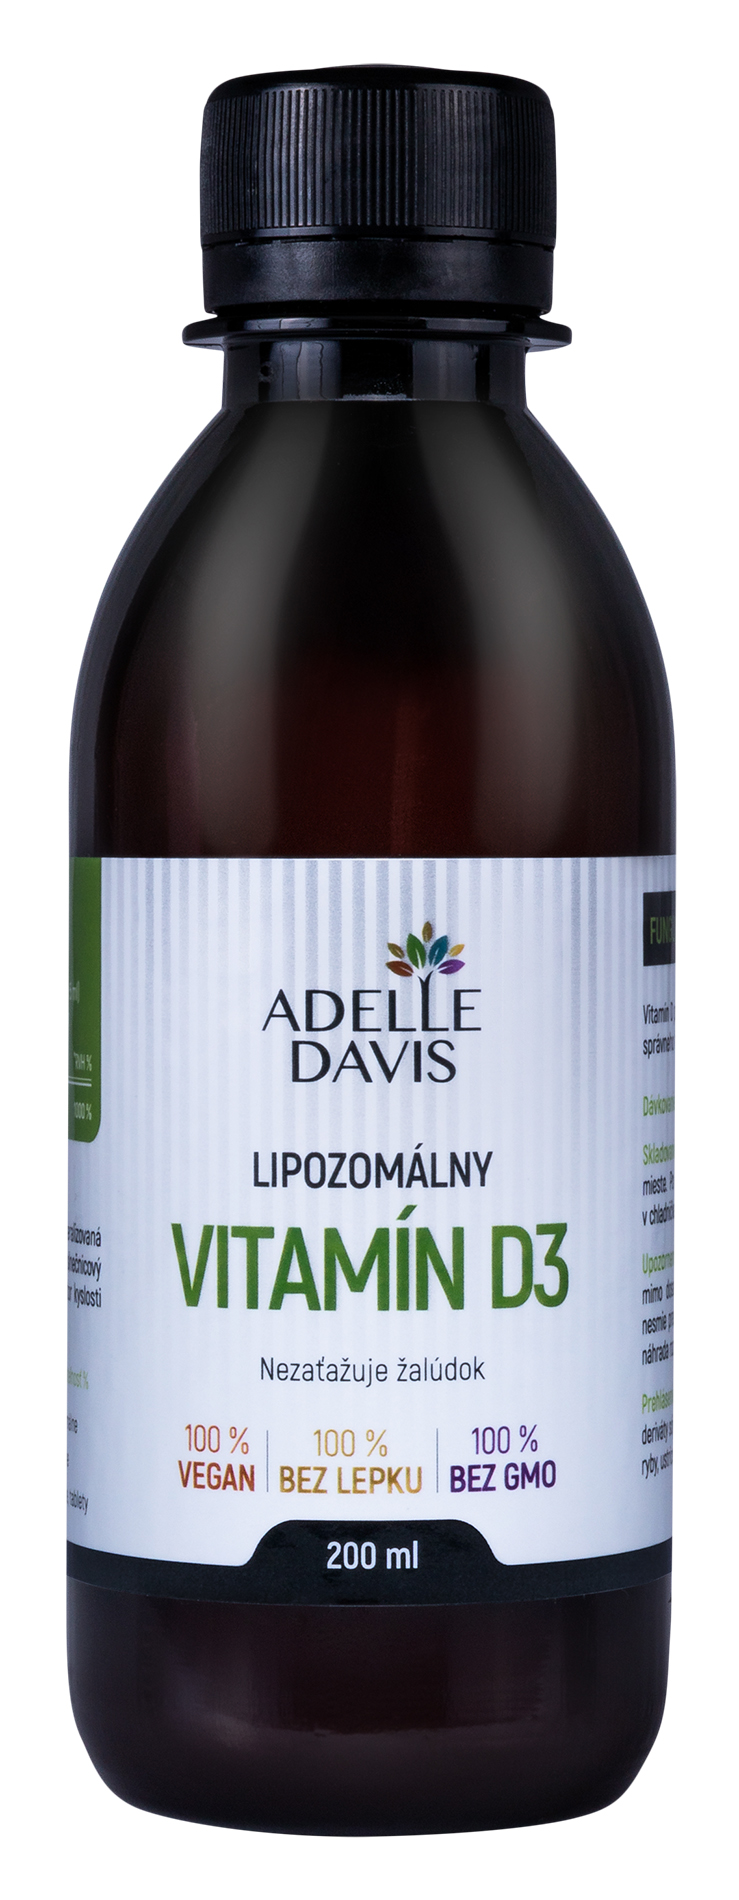 E-shop Adelle Davis tekutý lipozomálny vitamín D3, 200ml